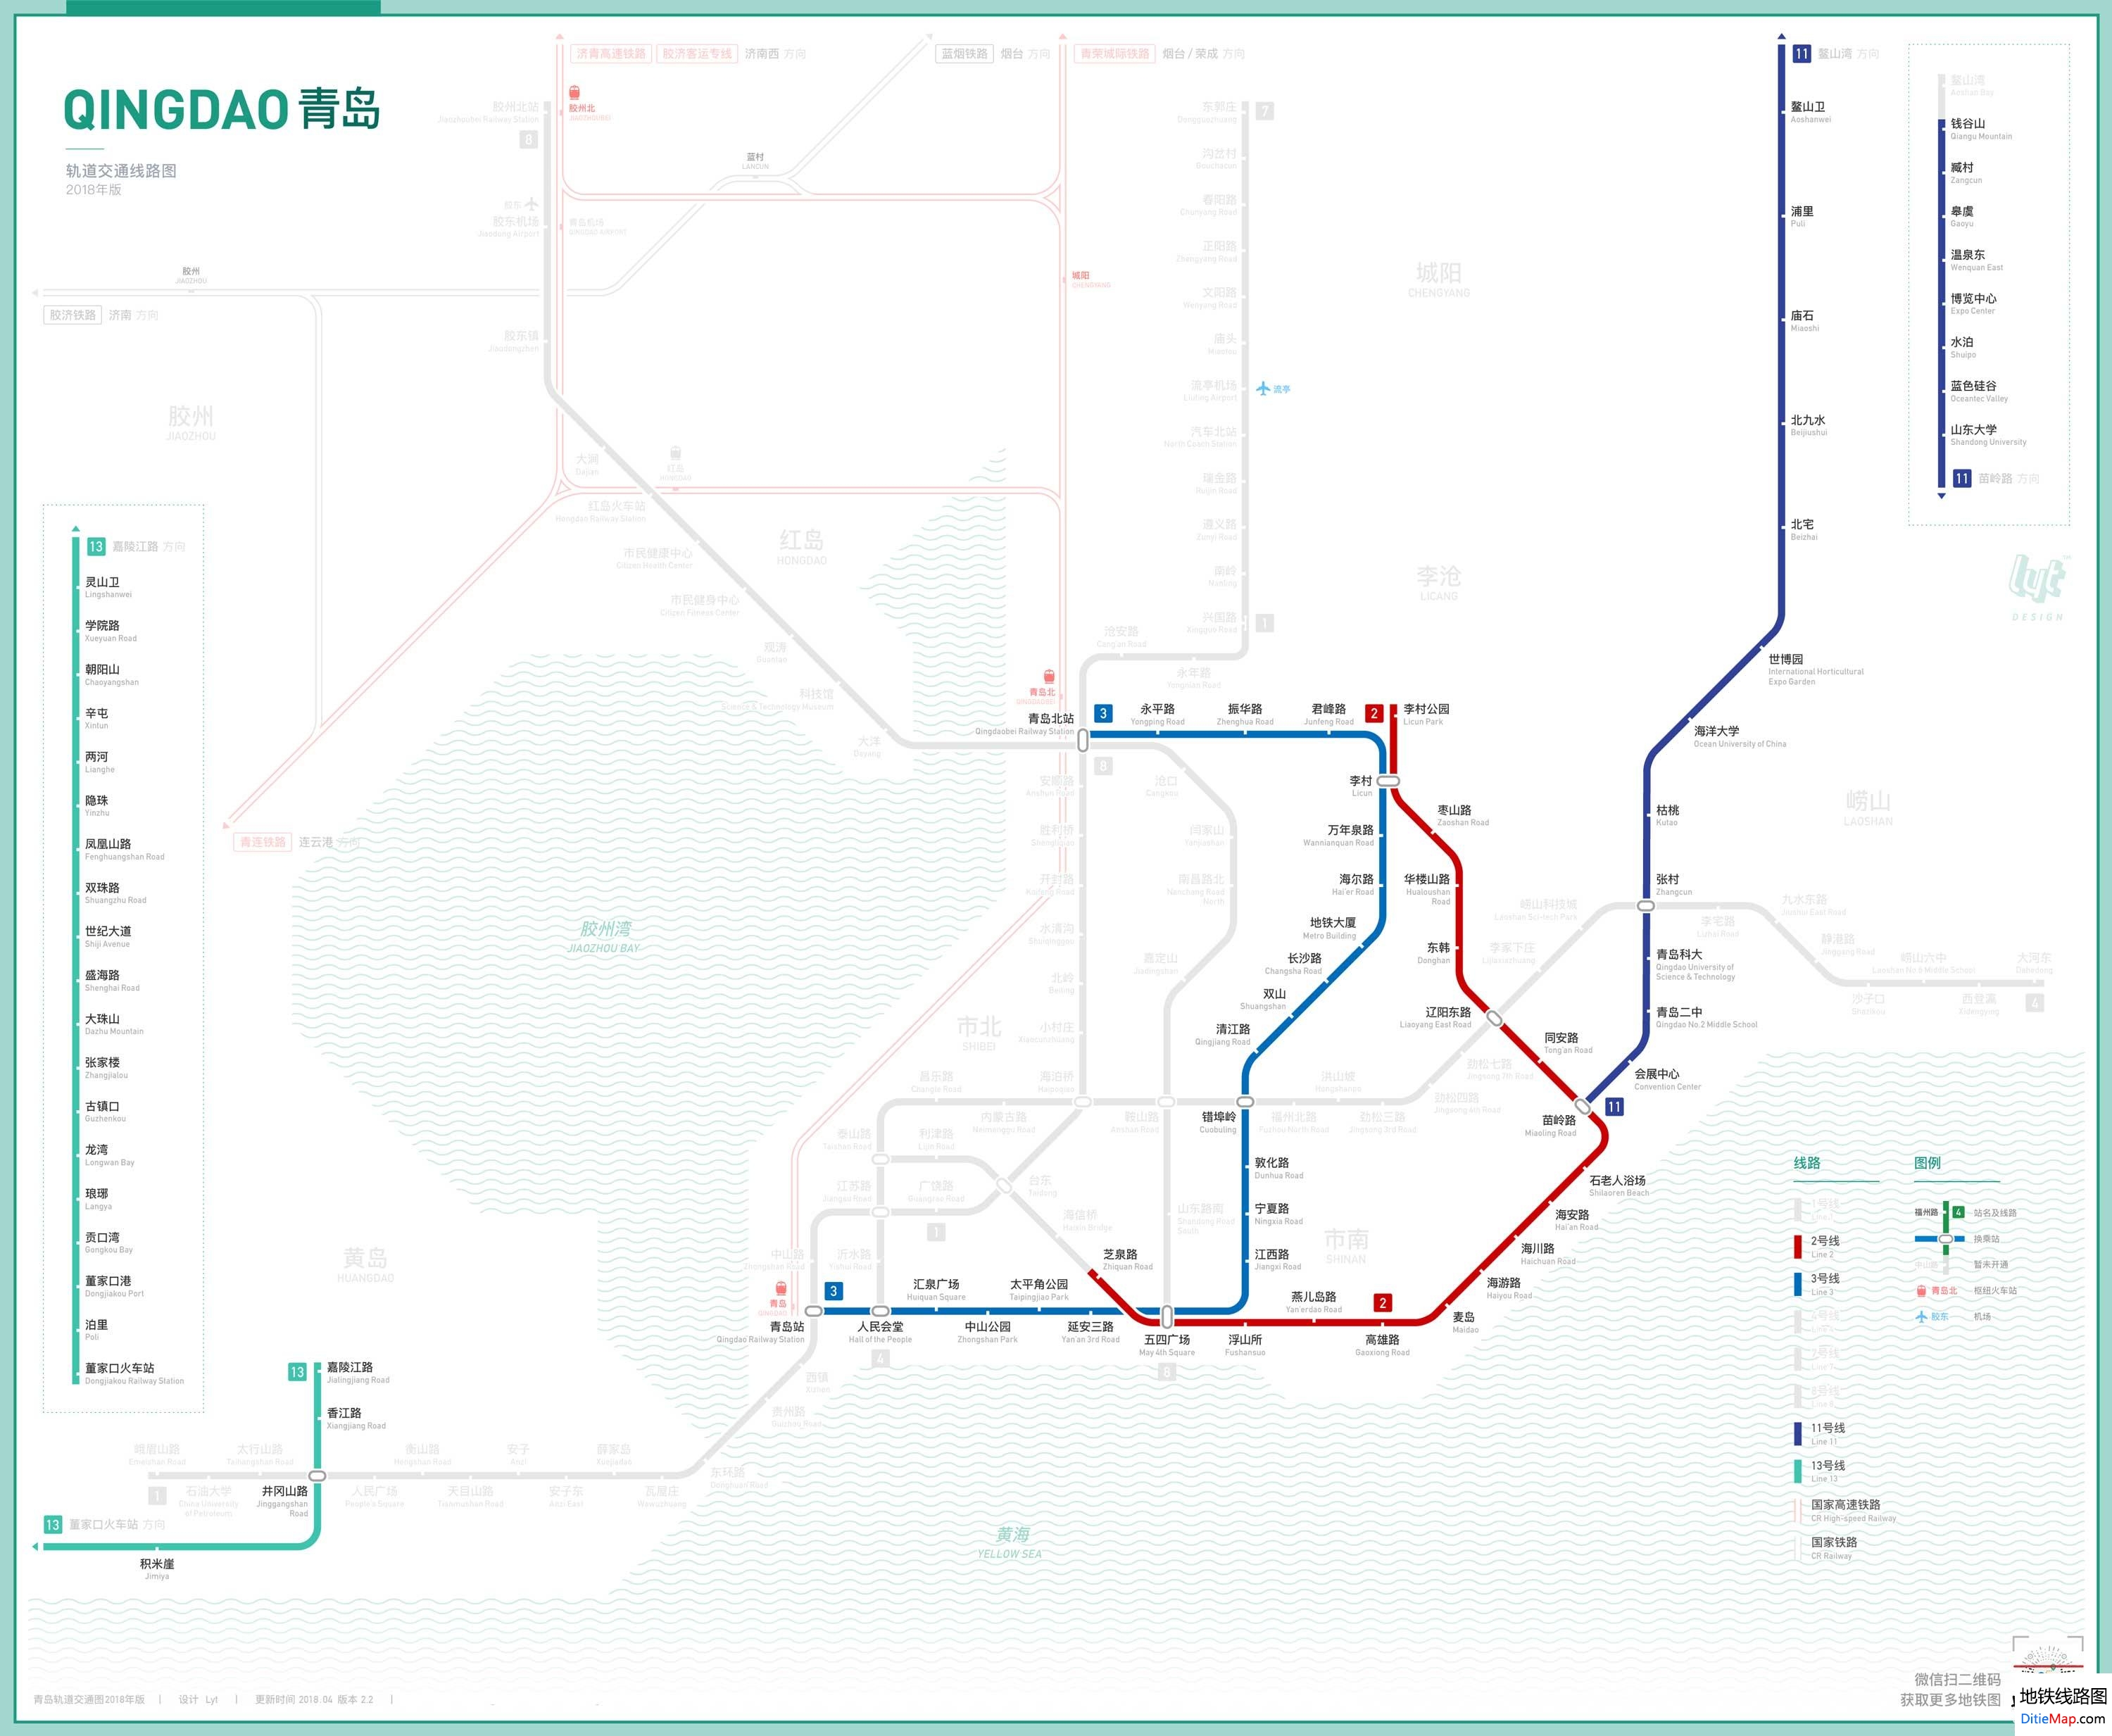 青岛地铁线路图 运营时间票价站点 查询下载 青岛地铁查询 青岛地铁